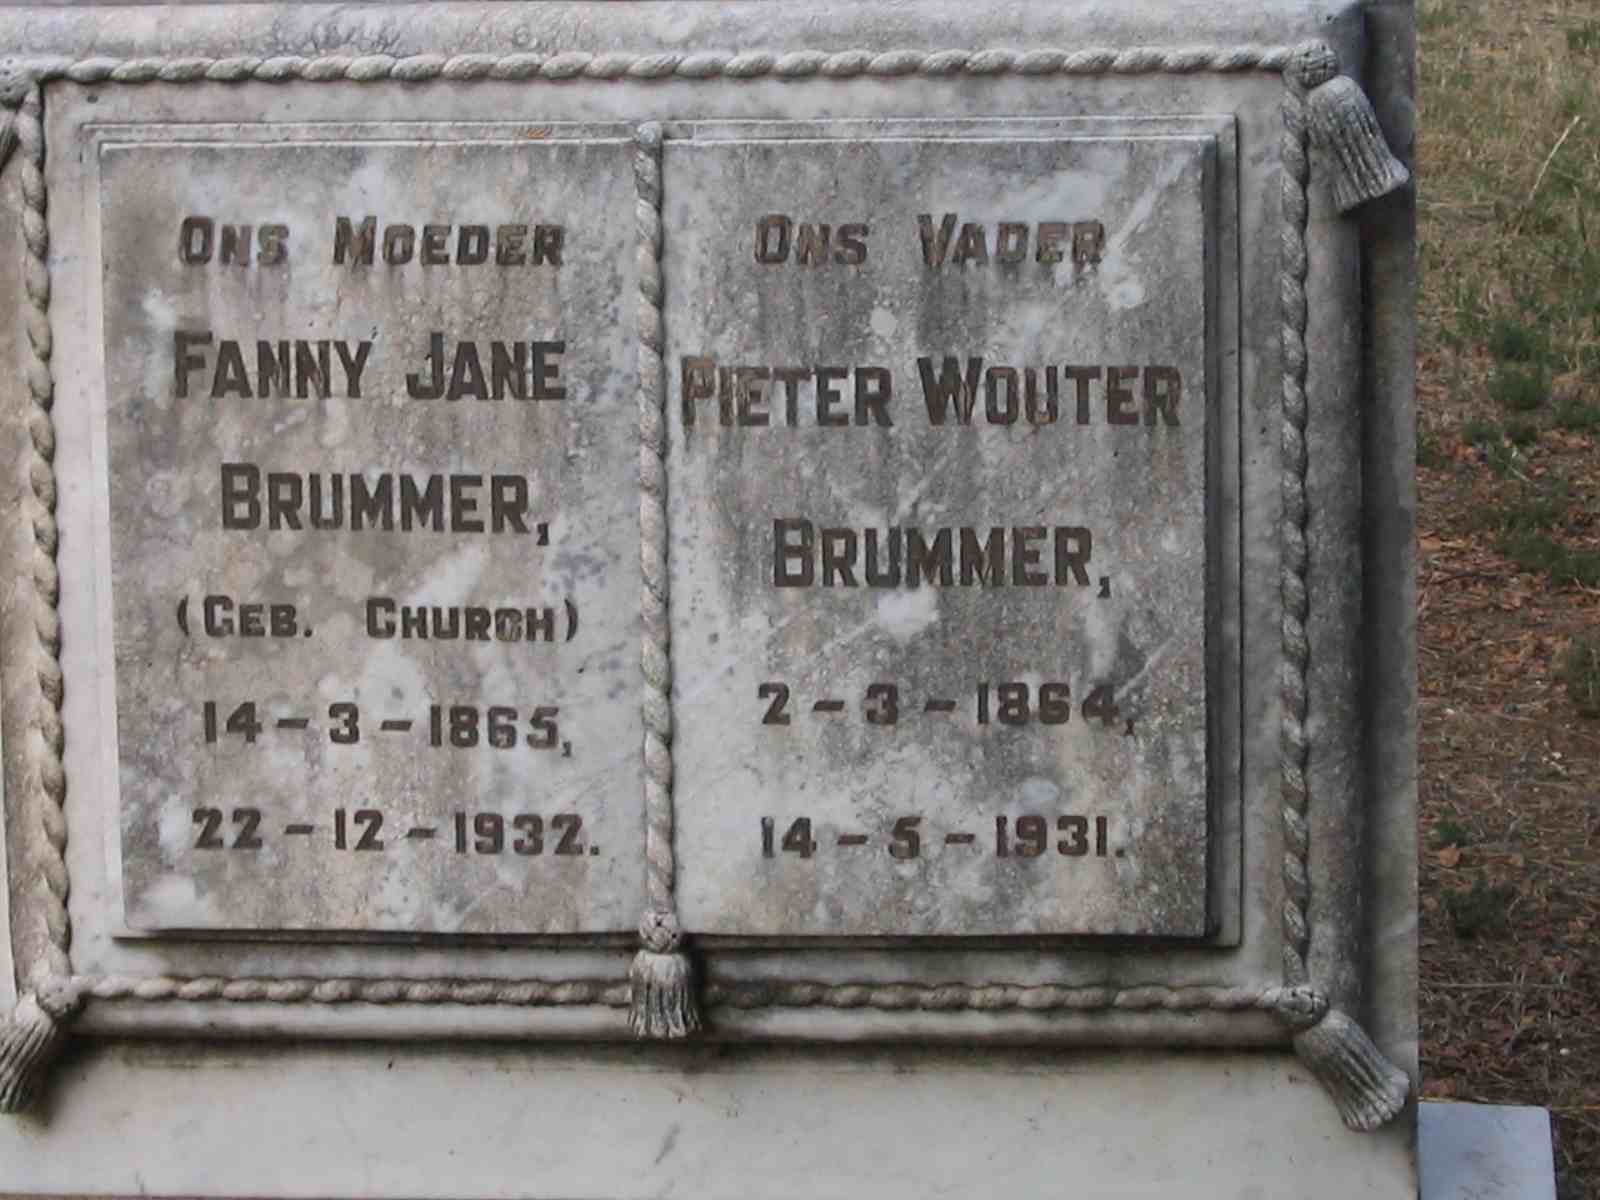 BRUMMER Pieter Wouter 1864-1931 & Fanny Jane CHURCH 1865-1932